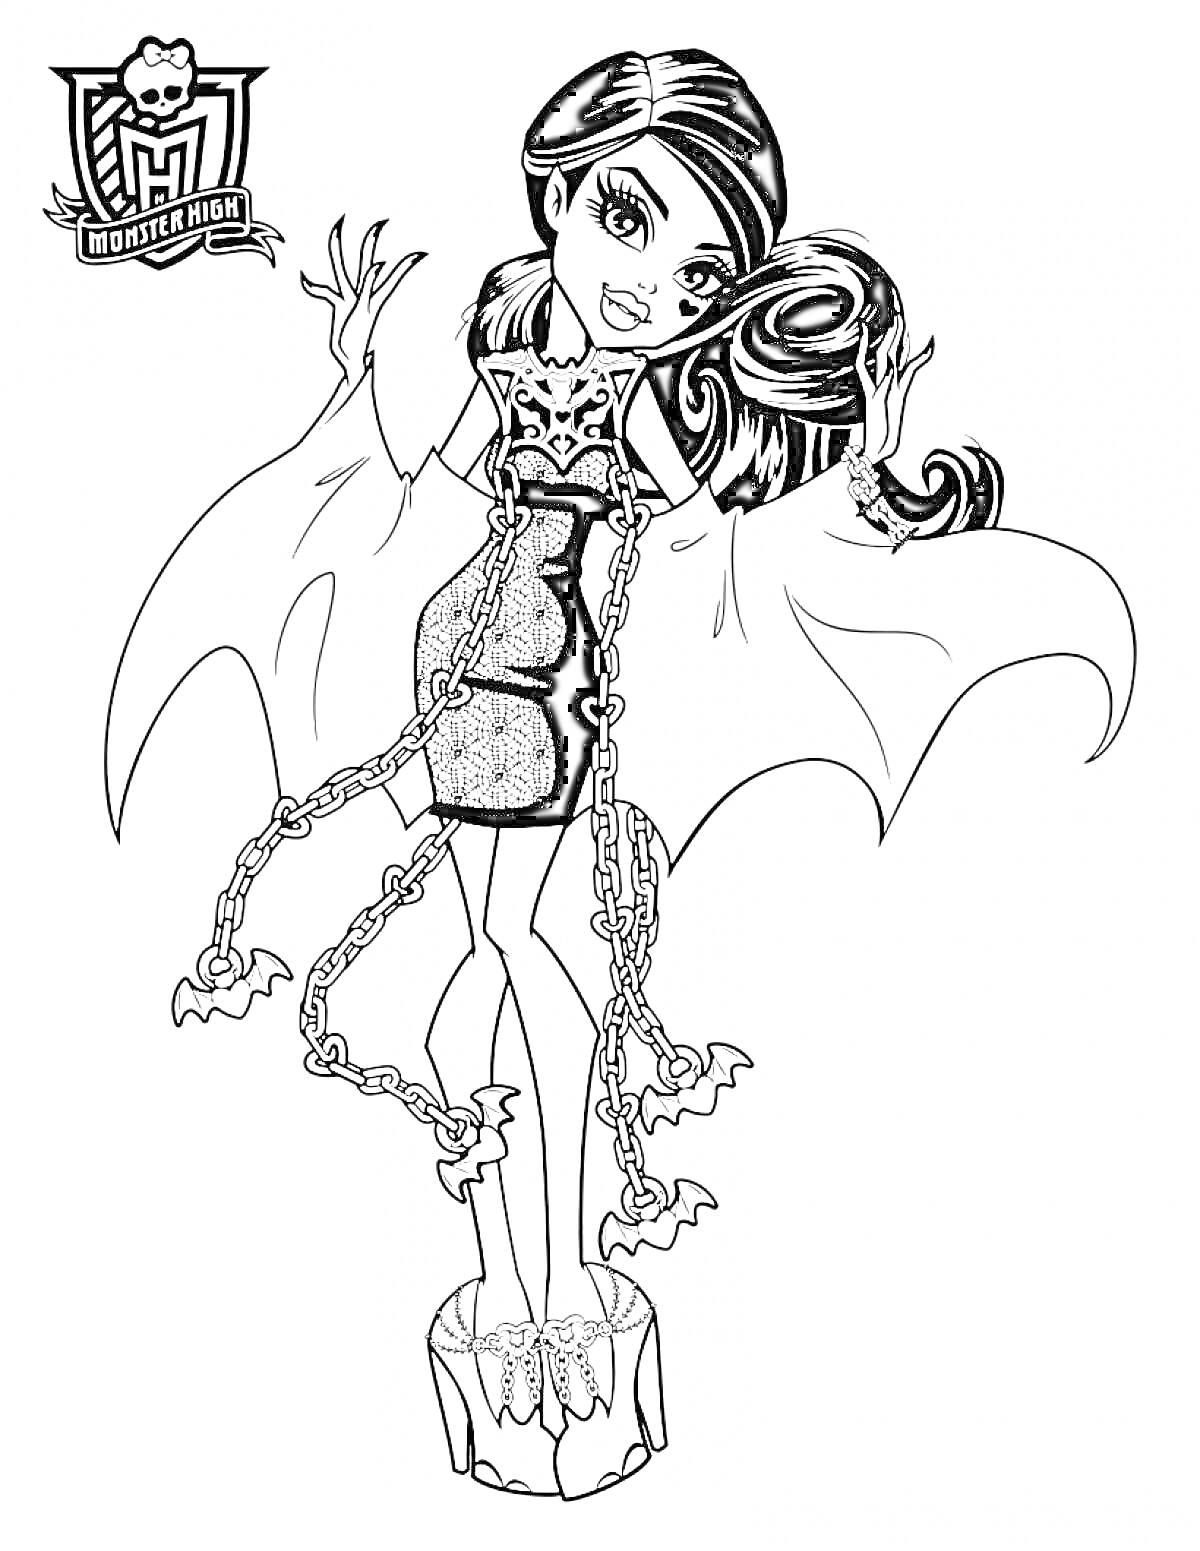 Девушка с длинными волосами в платье с цепями и крыльями, стоящая на платформе с цепями и привидениями, Монстер Хай Призрачно